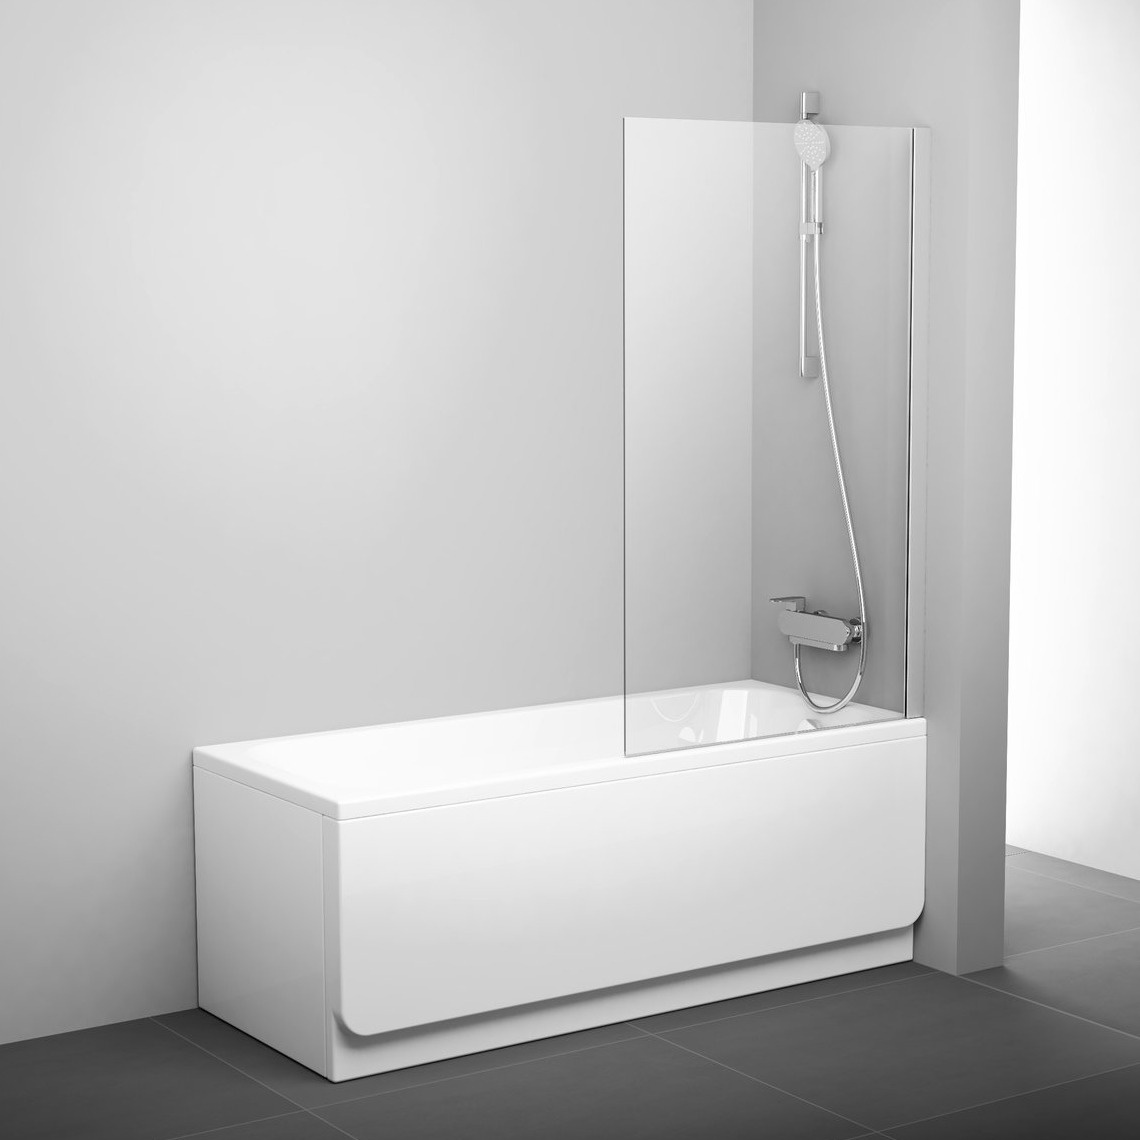 Шторка стеклянная для ванны универсальная 140x80см RAVAK PIVOT PVS1-80 стекло прозрачное 6мм профиль хром 79840C00Z1